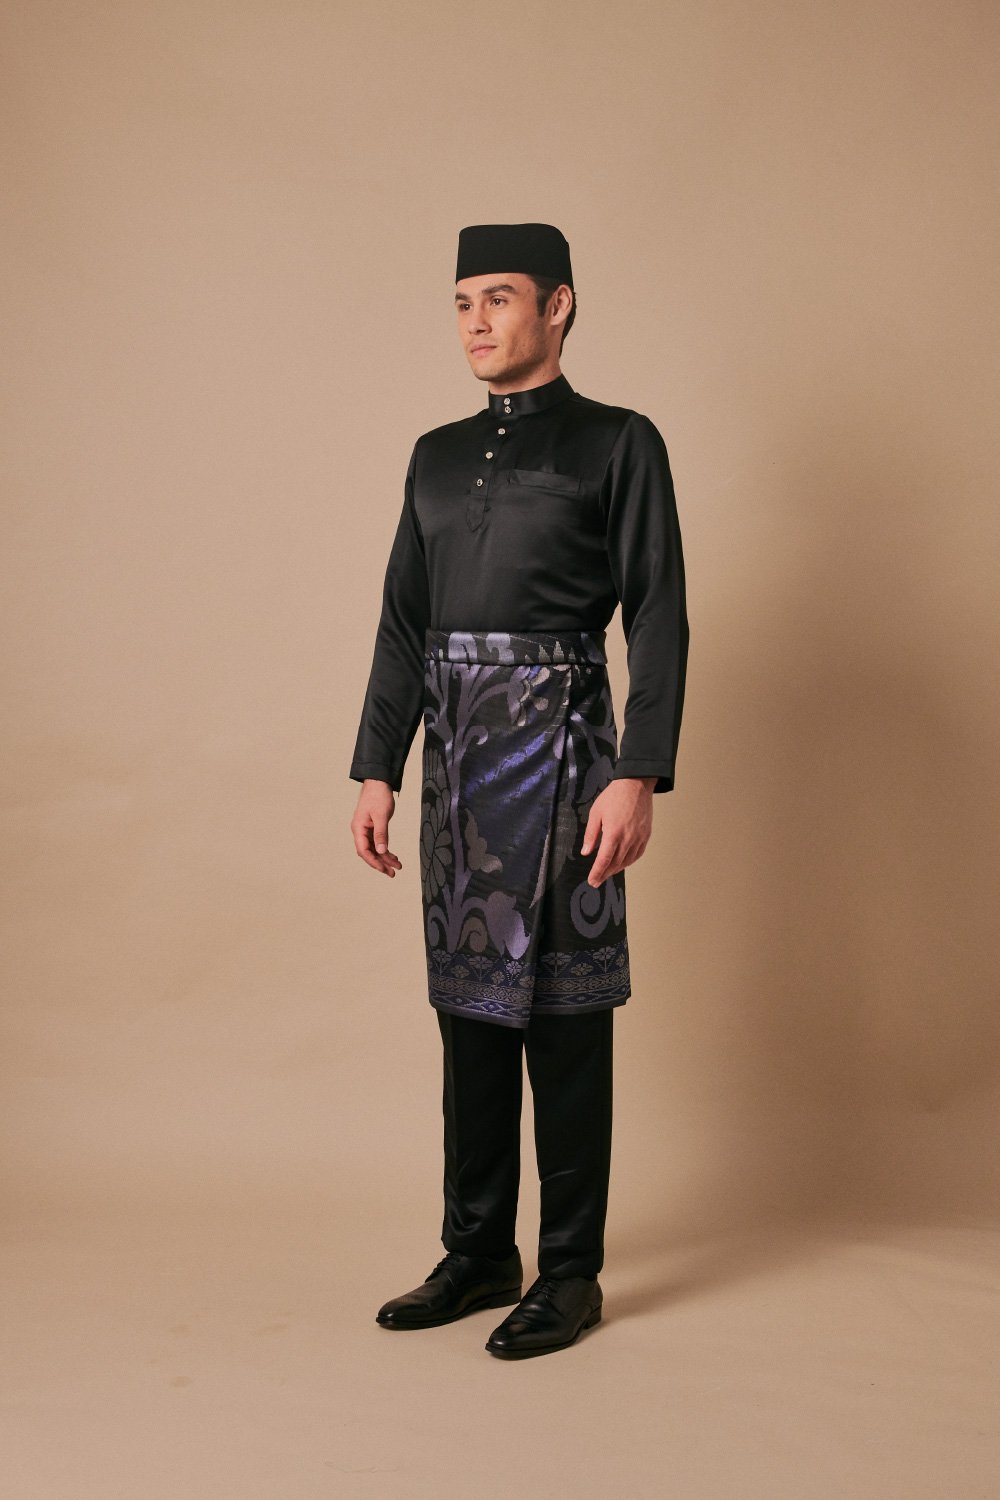 Baju Melayu in Black